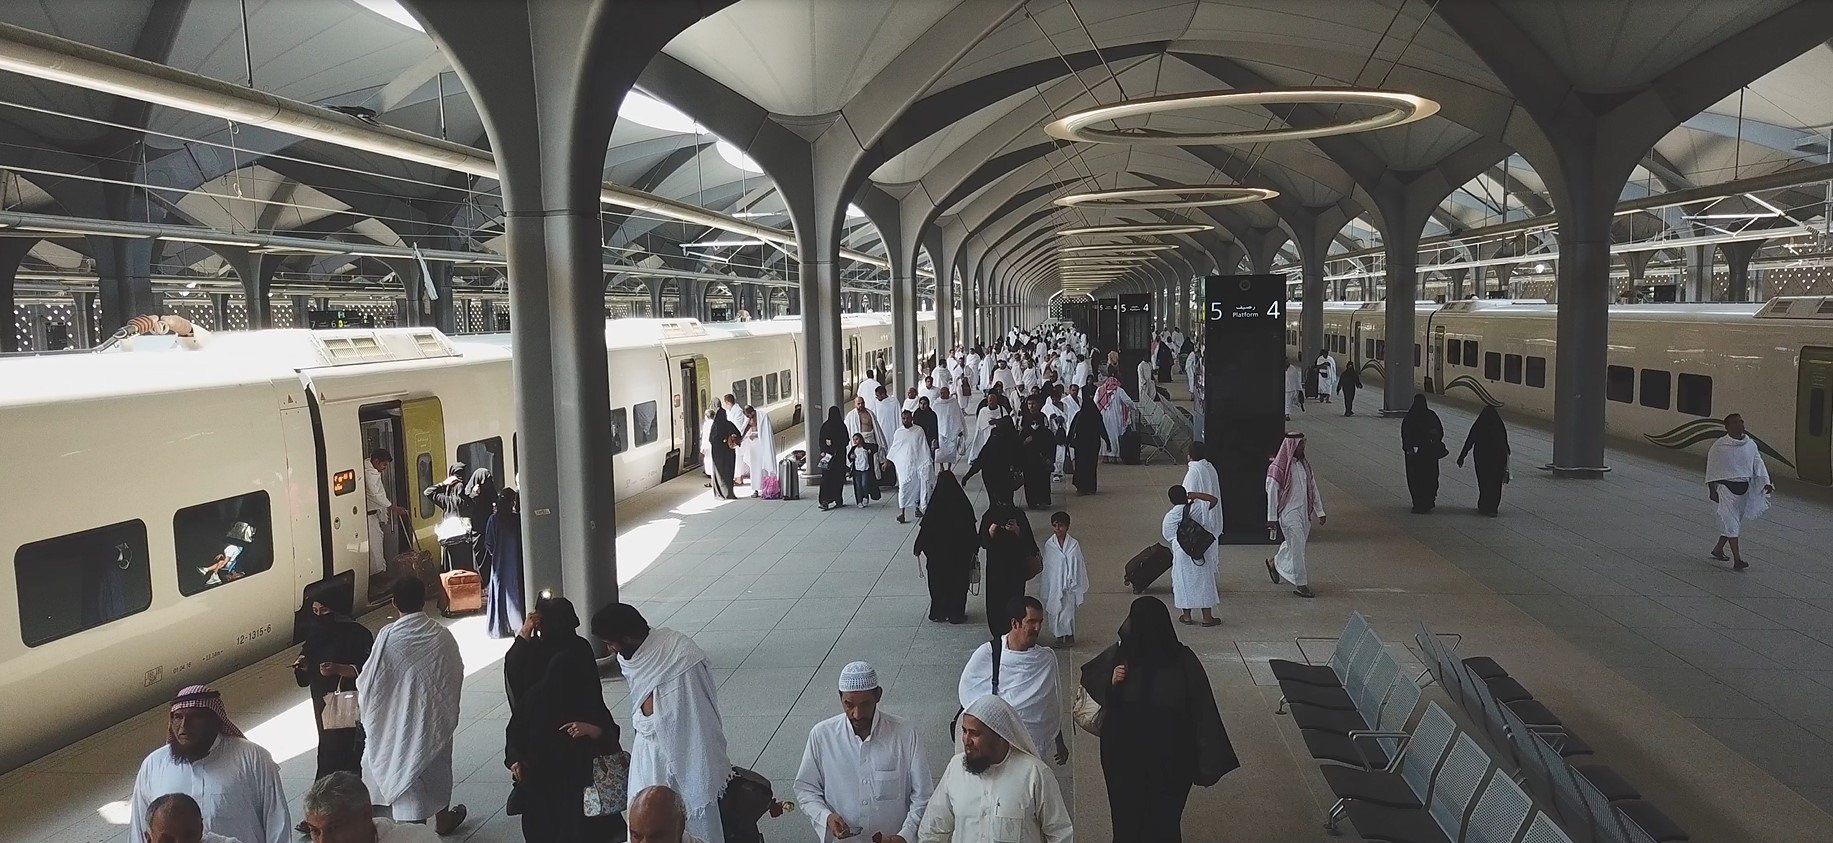 L'AVE a la Meca bat el rècord de passatgers durant el Ramadà, amb 930.000